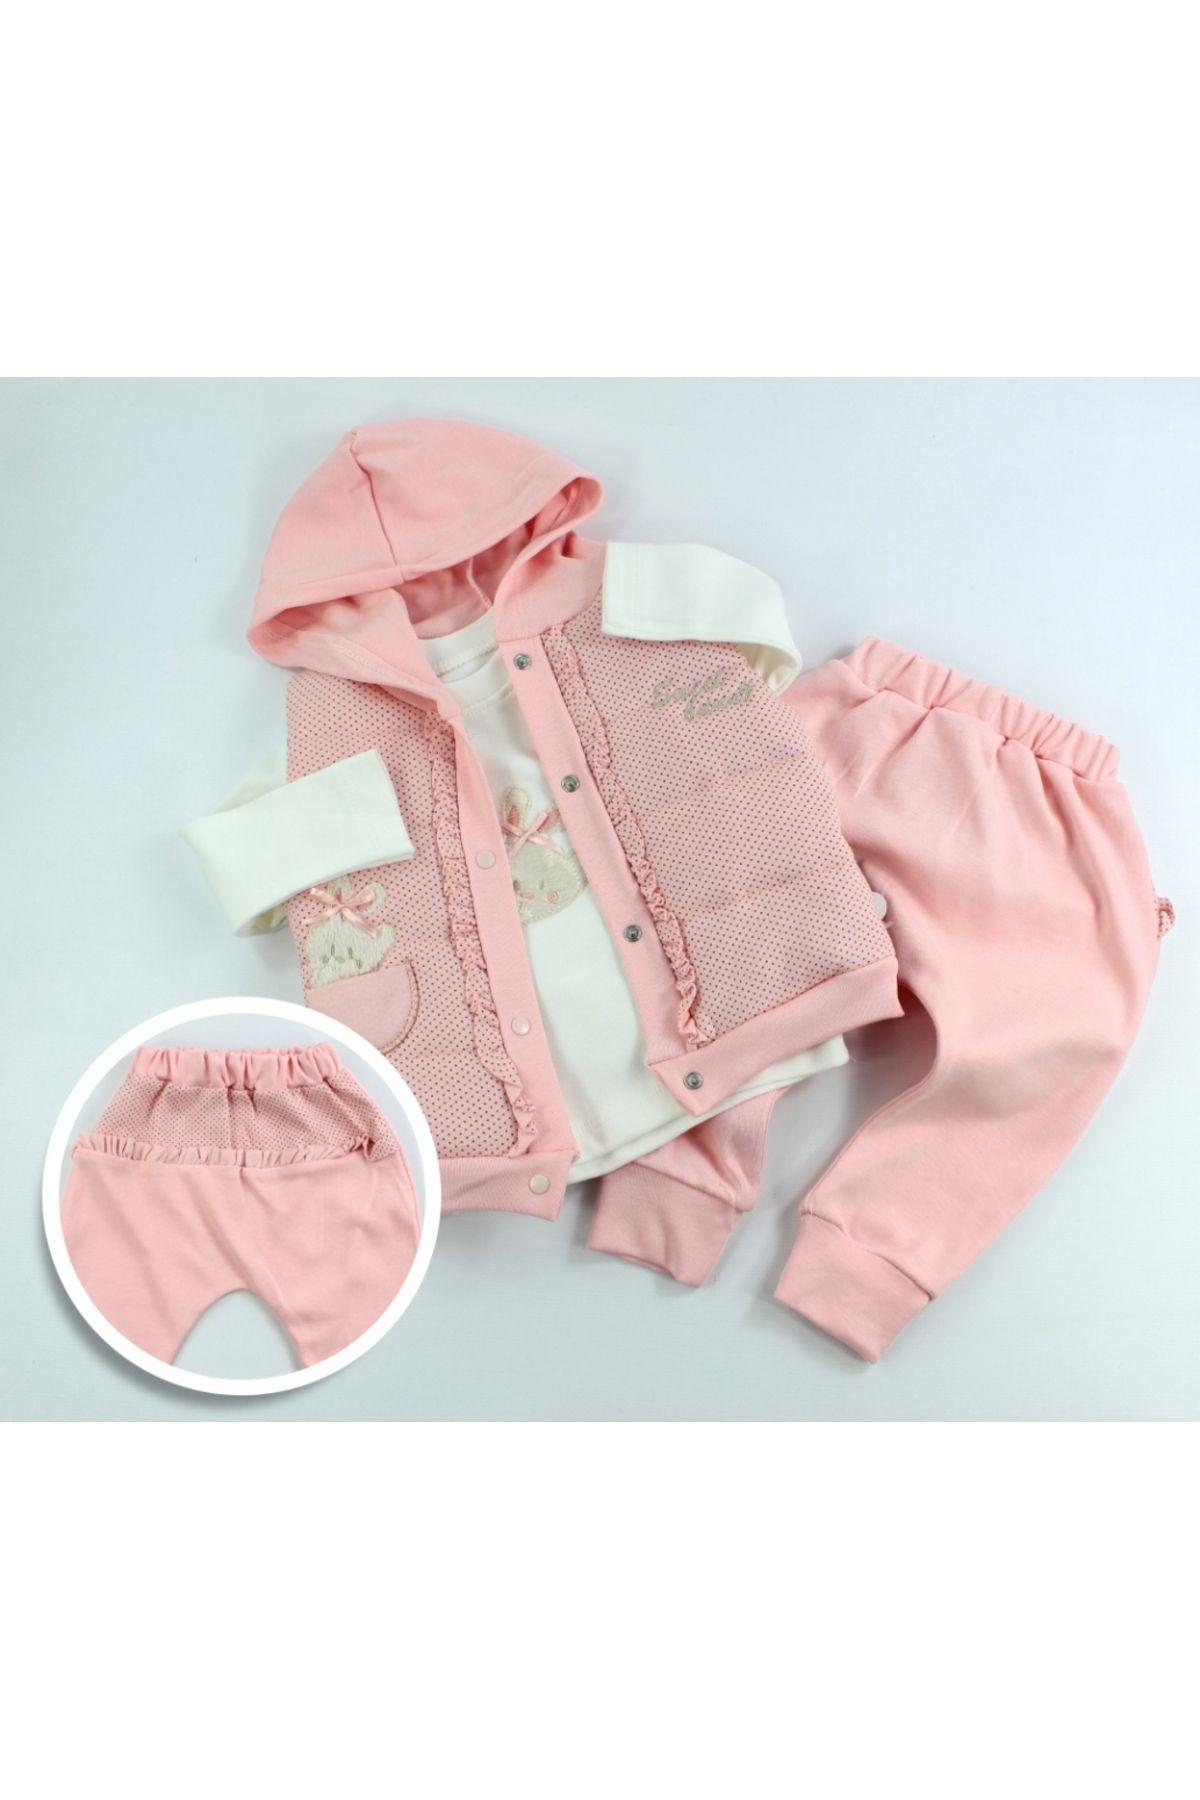 DIDuStore Kız Bebekler için Şık ve Konforlu 3 Parça Giyim Seti